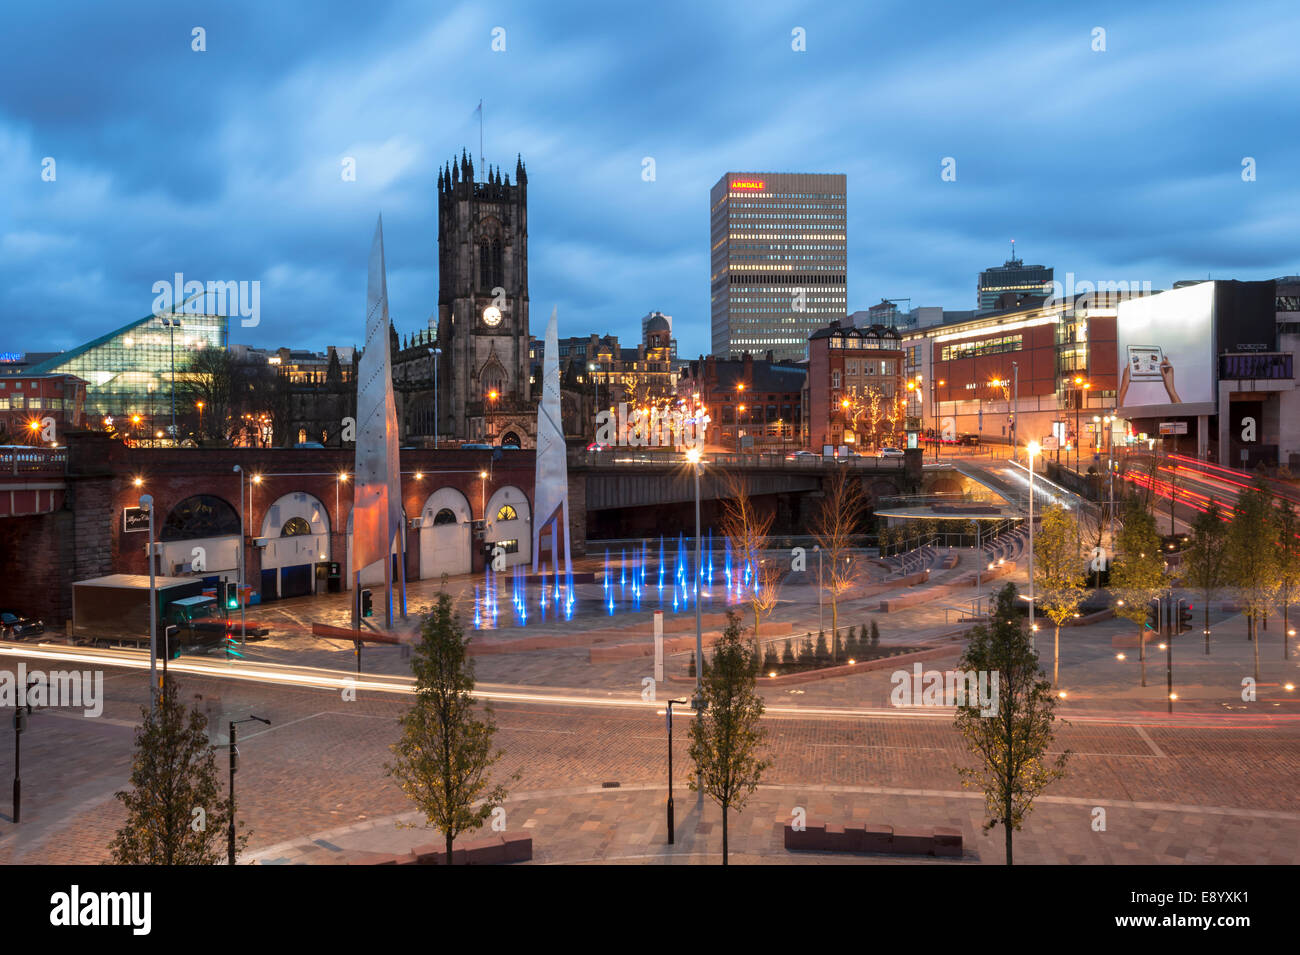 Descripción general de la ciudad de Manchester Manchester, RU en la noche Foto de stock